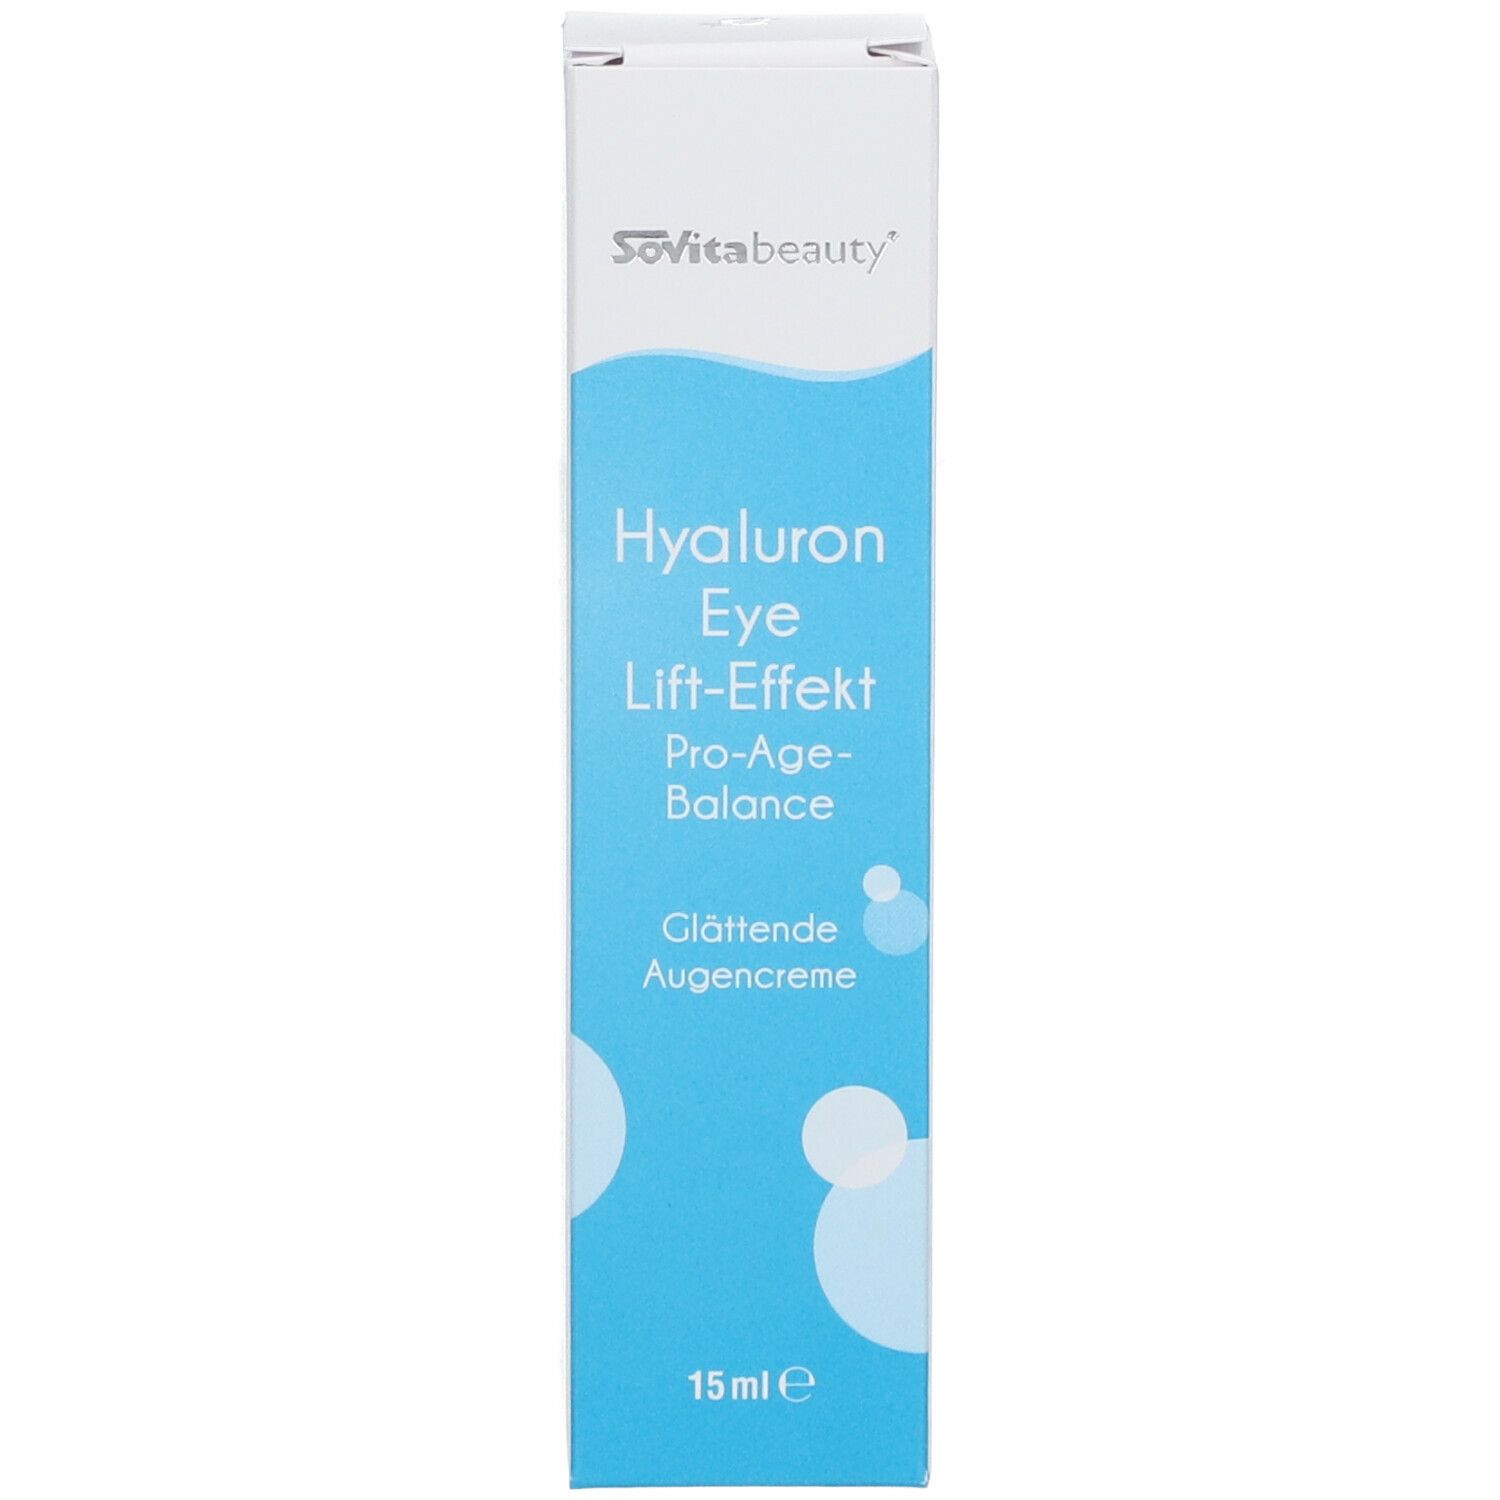 SoVitabeauty® Hyaluron Eye Lift-Effekt